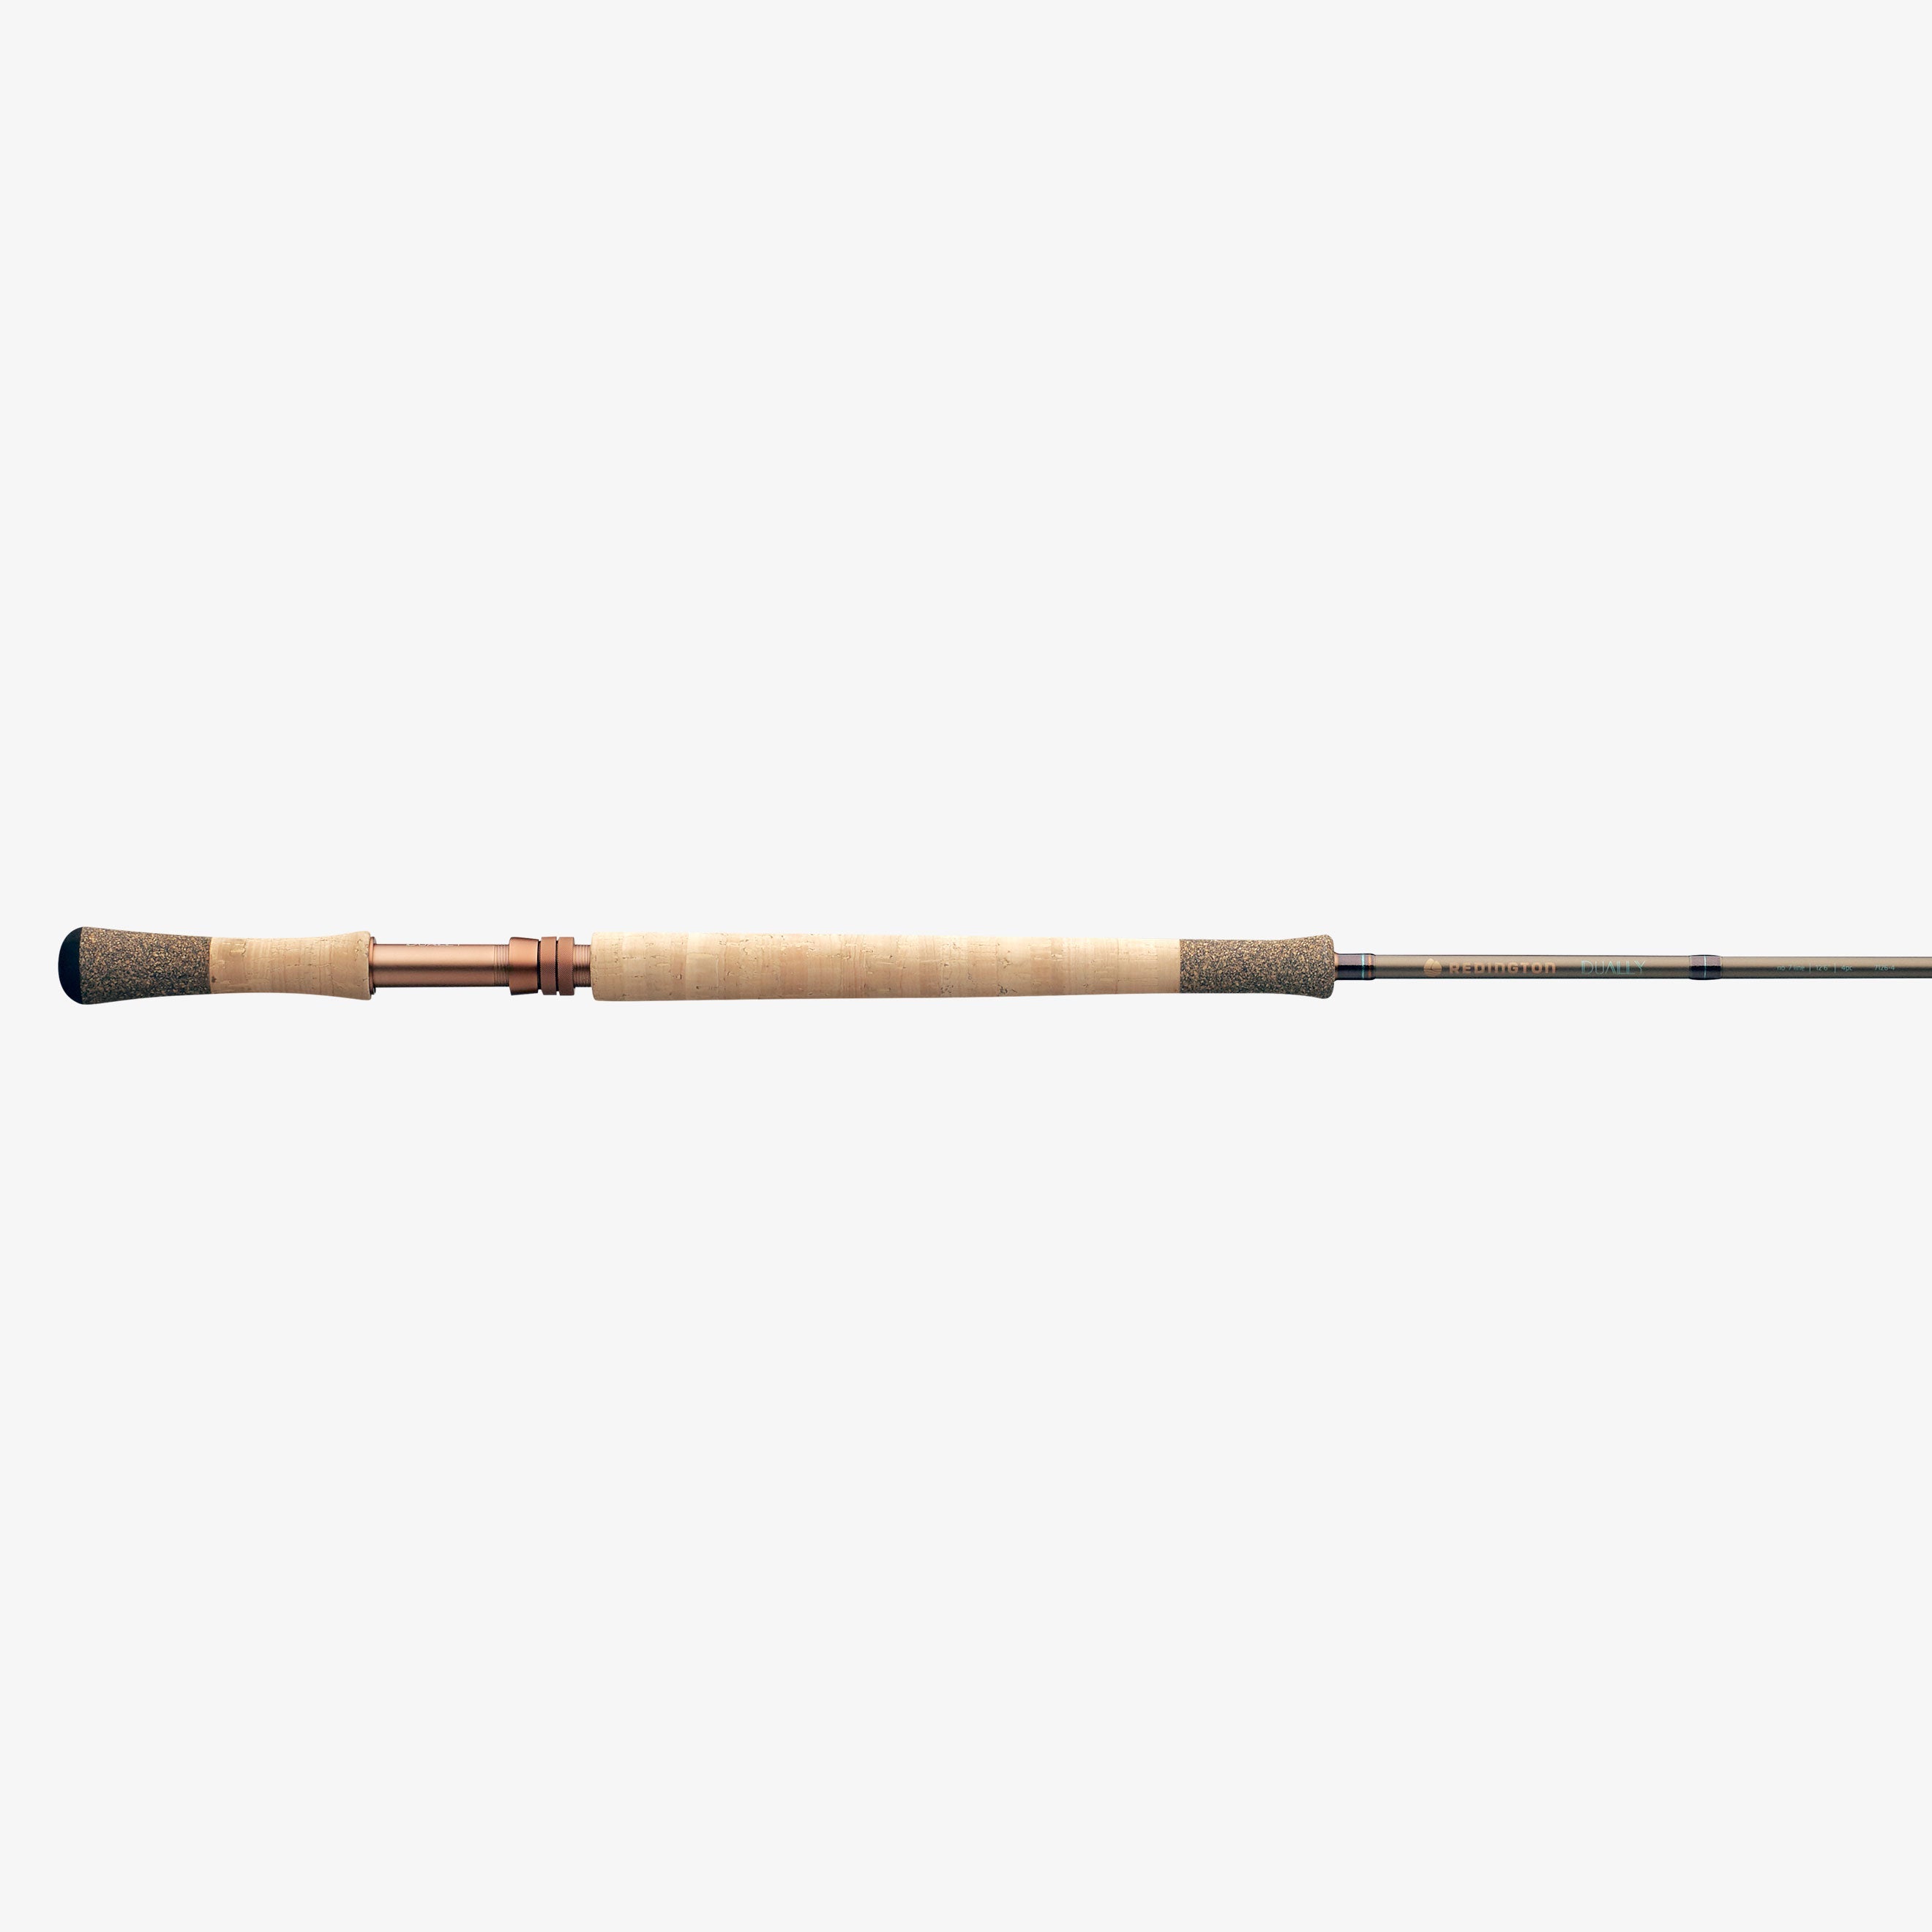 Redington Dually Fly Fishing Rod, 4 Pieces, 7 WT 11-Foot 6 7WT 11